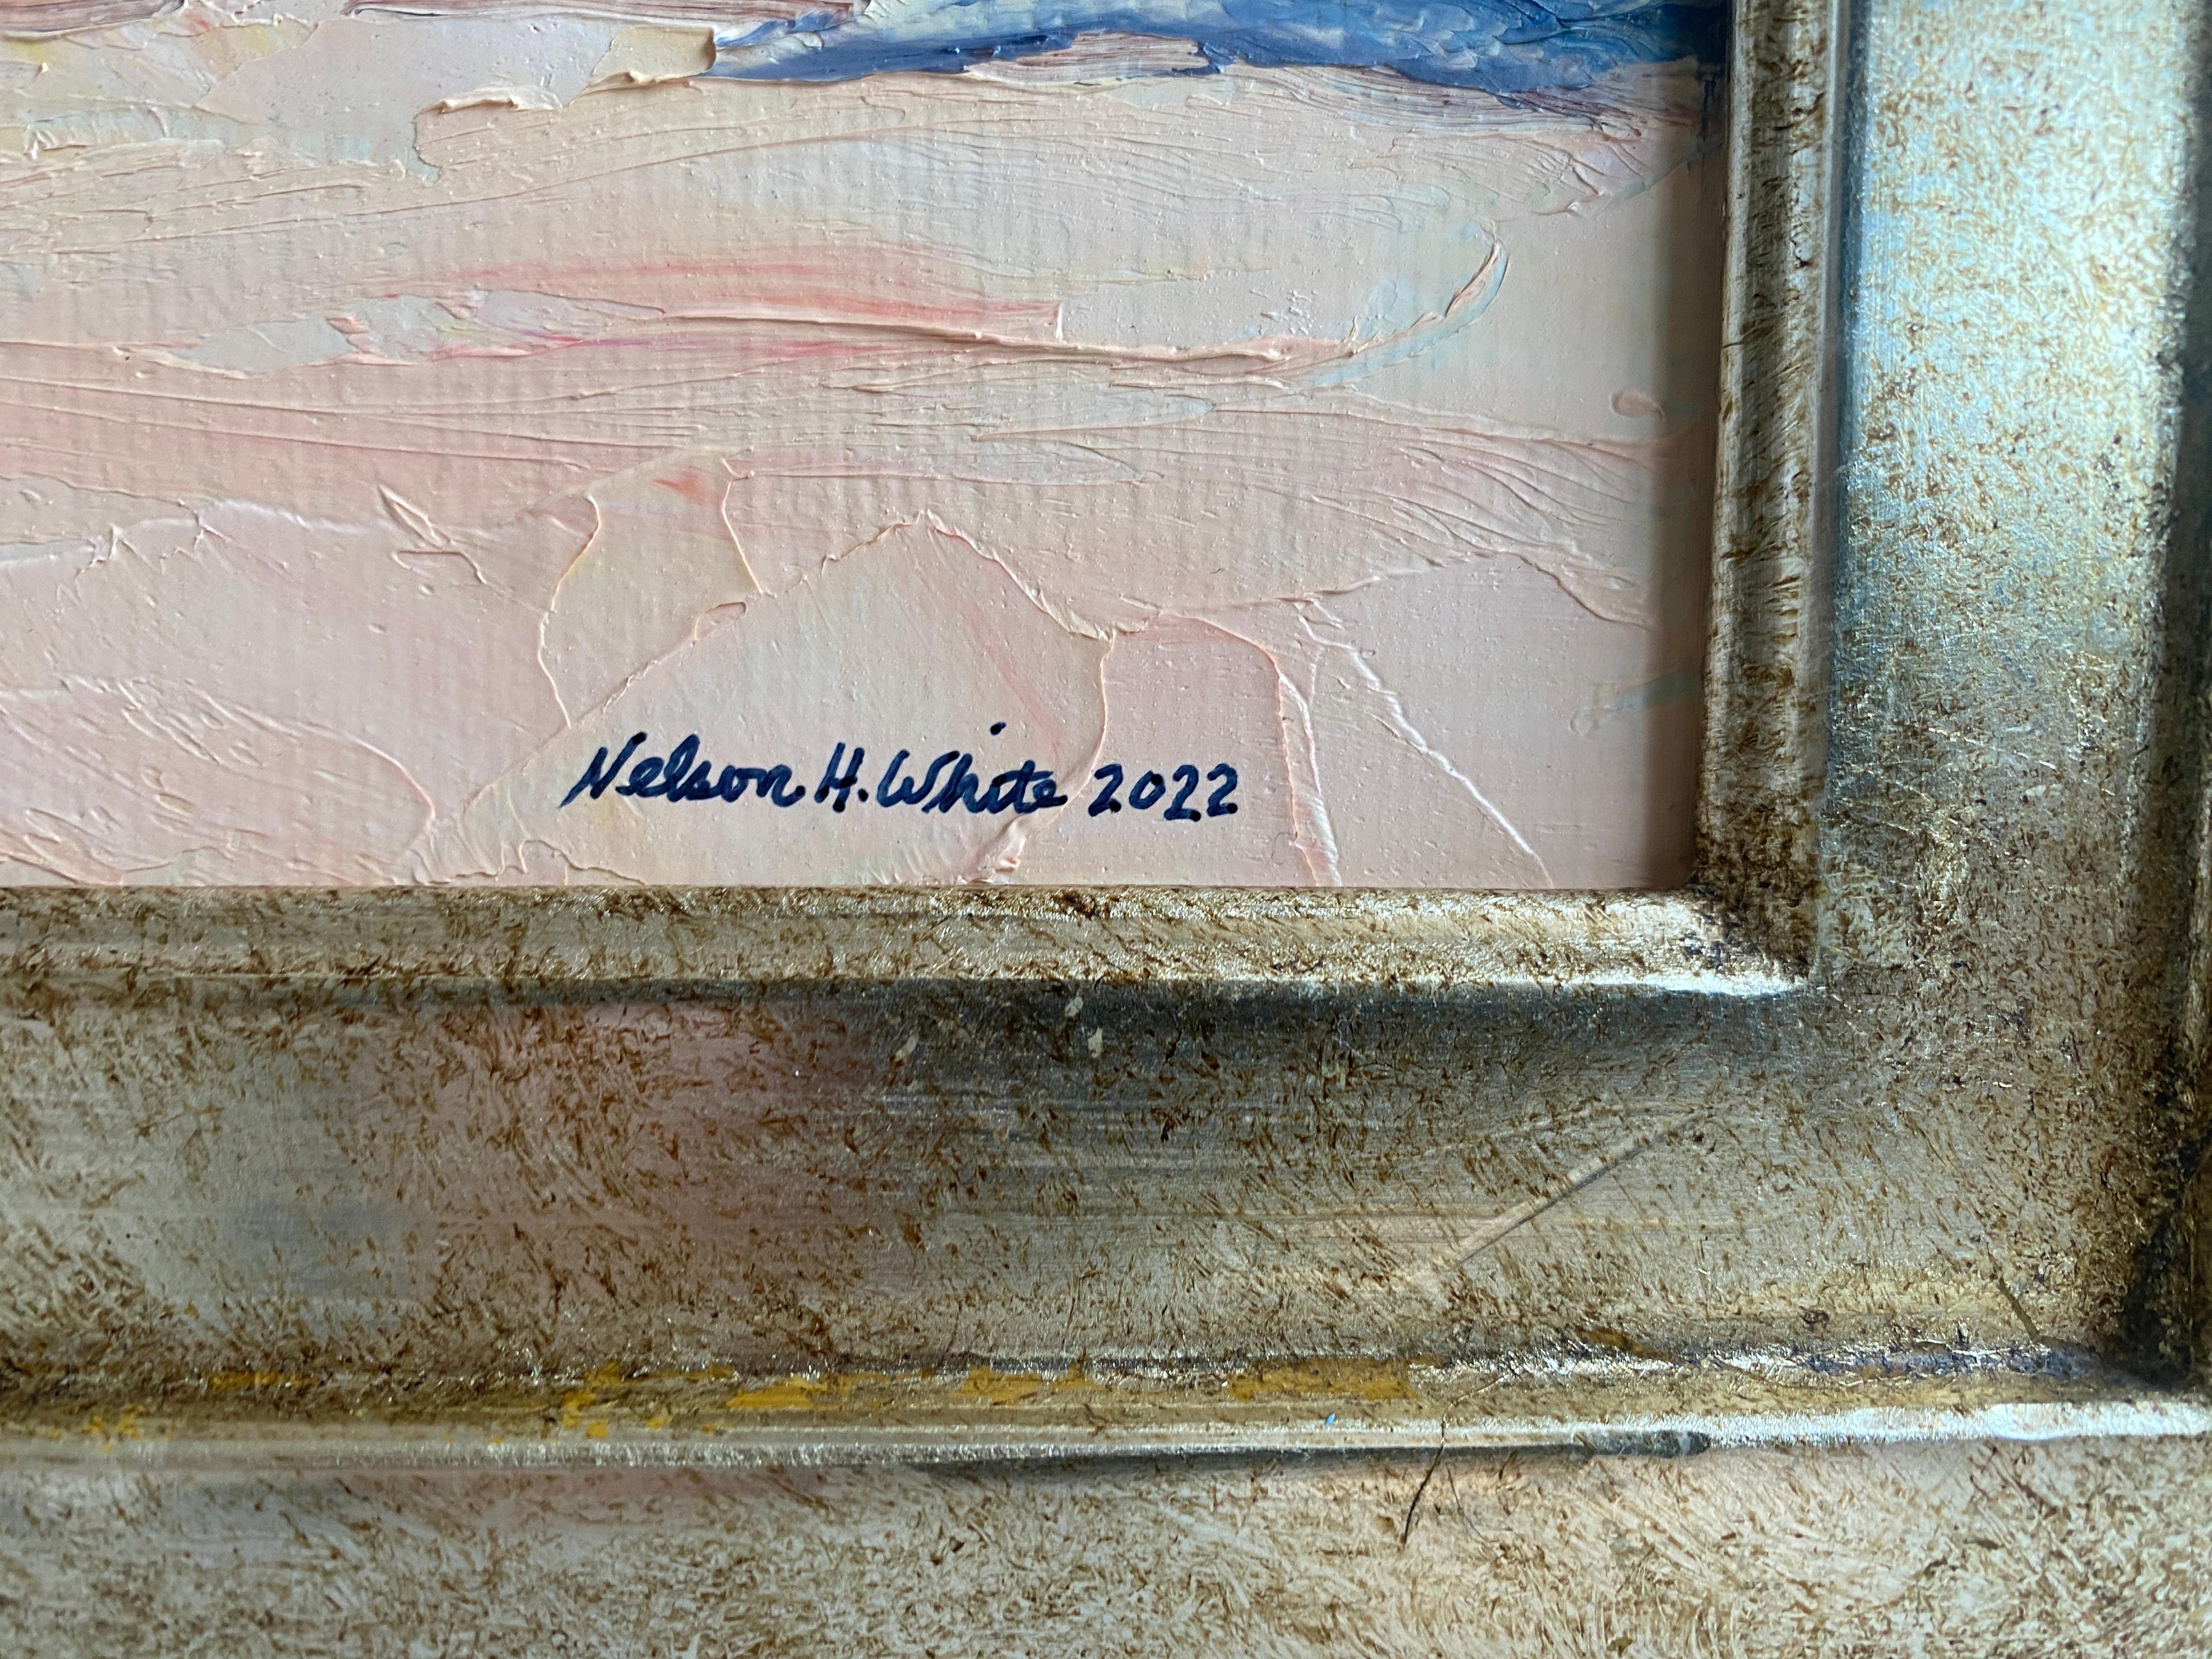 Une peinture en plein air du parapluie classique de Nelson Whiting, symbole de la quintessence d'une journée d'été. Ses scènes de plage emmènent le spectateur dans un monde de nostalgie et de joie d'un moment d'insouciance. Une vue de ciel bleu